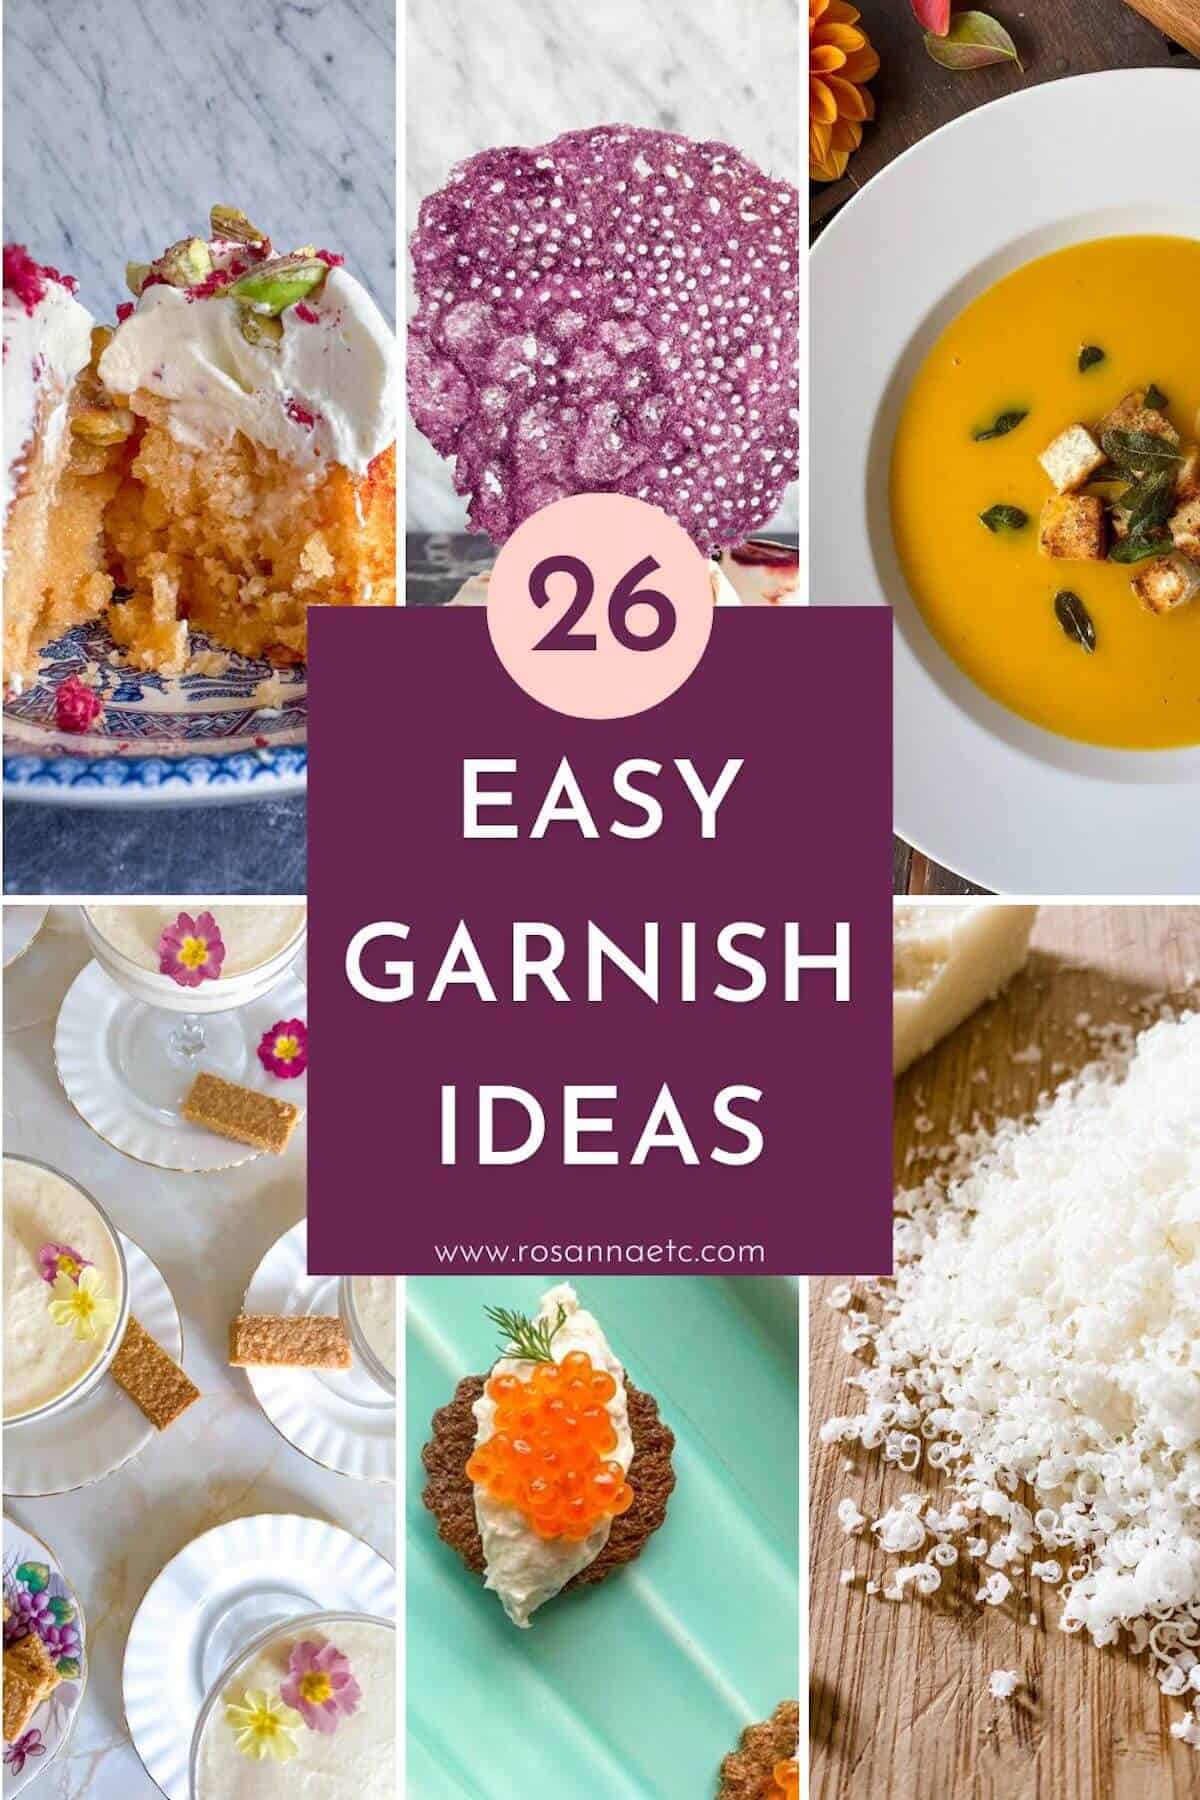 Easy Garnish Ideas for Food.